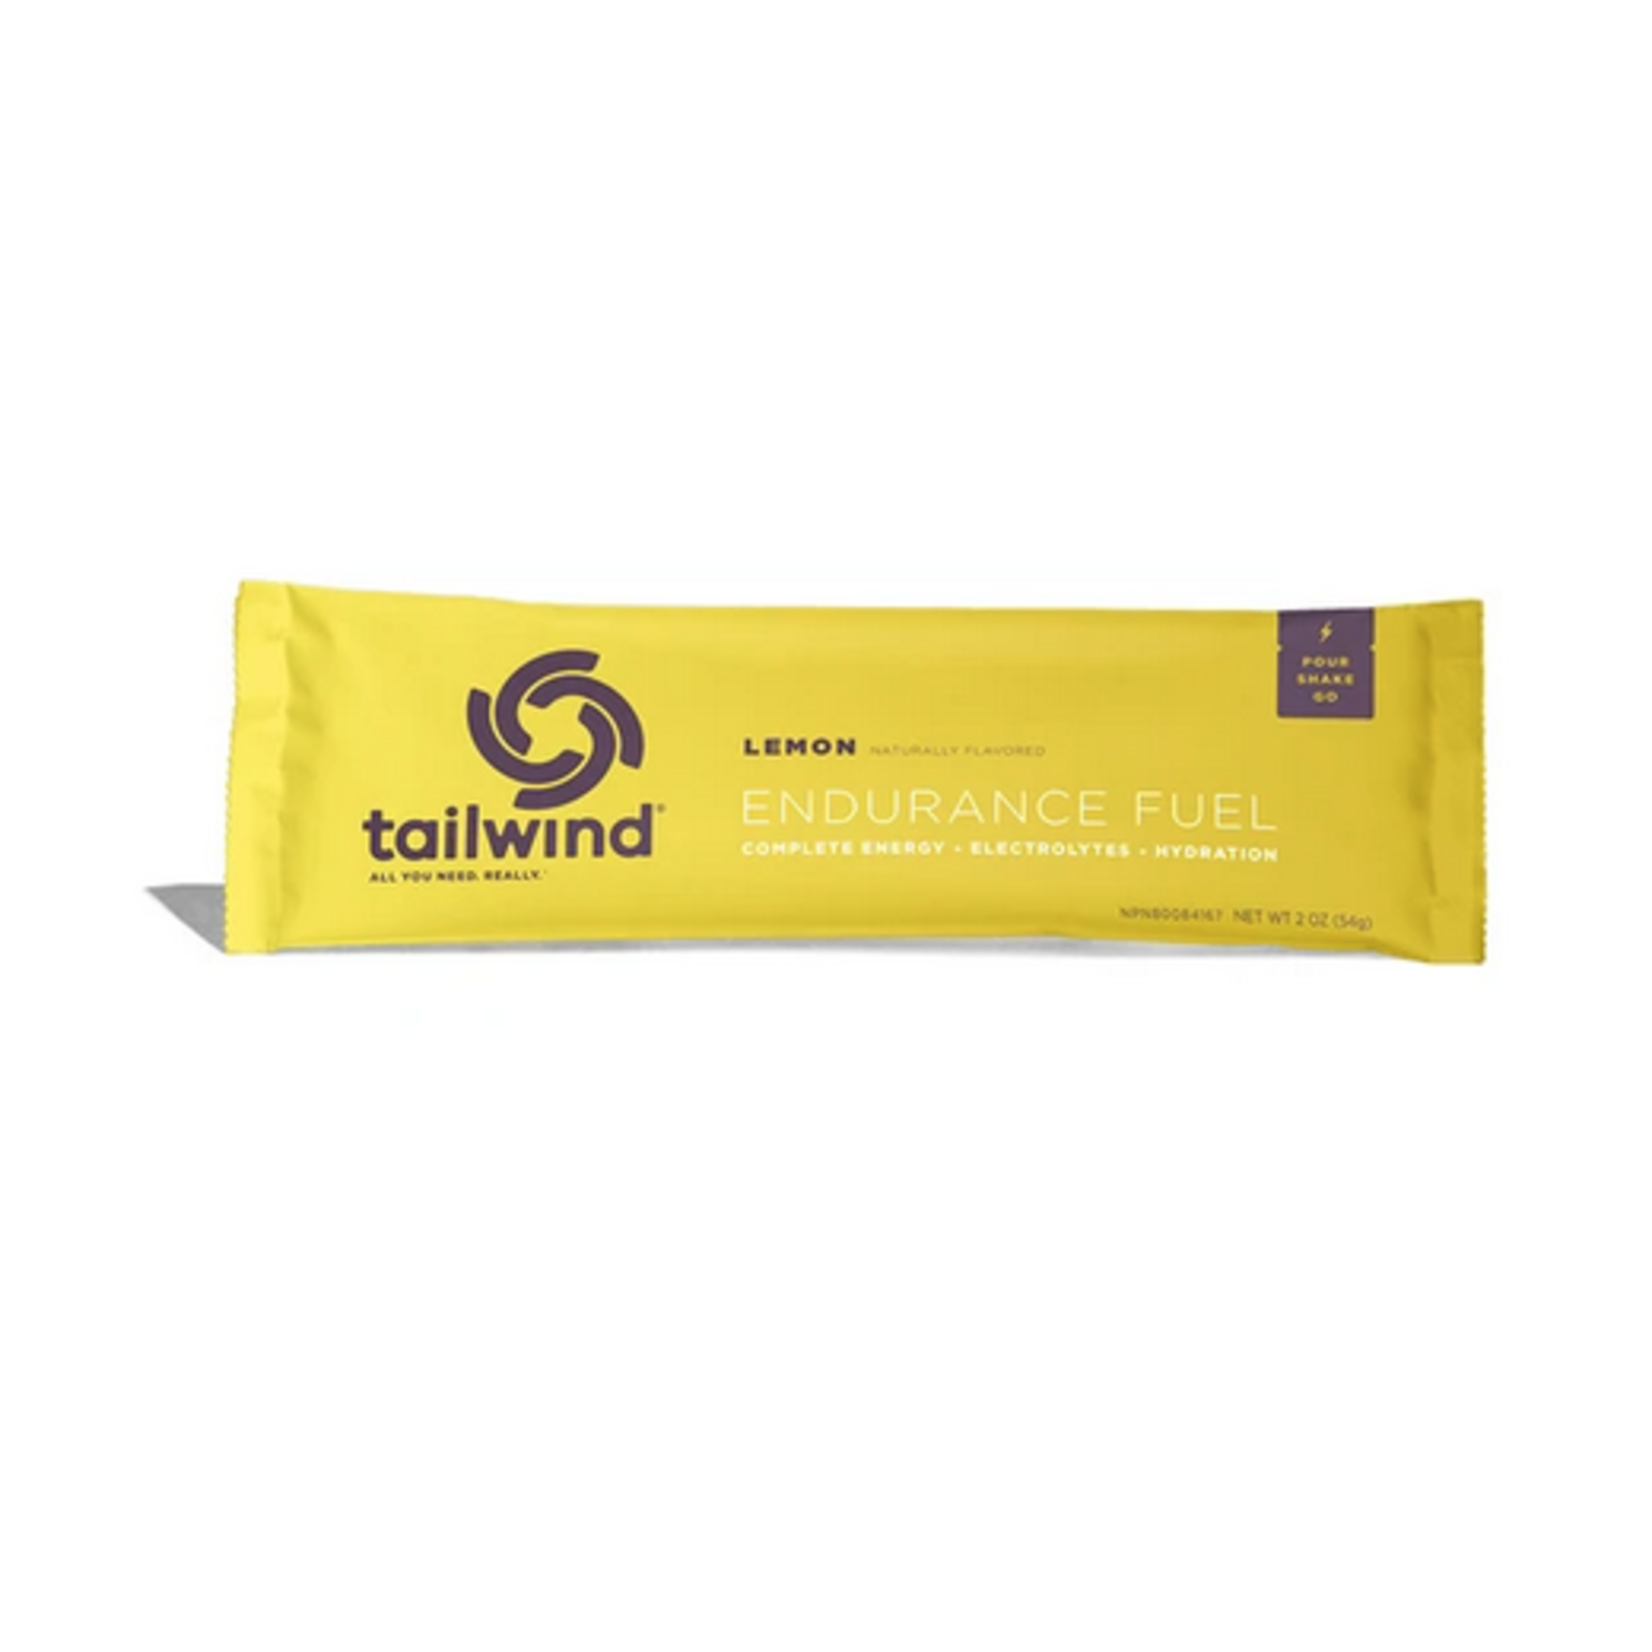 Tailwind Nutrition Tailwind Endurance Fuel - Lemon